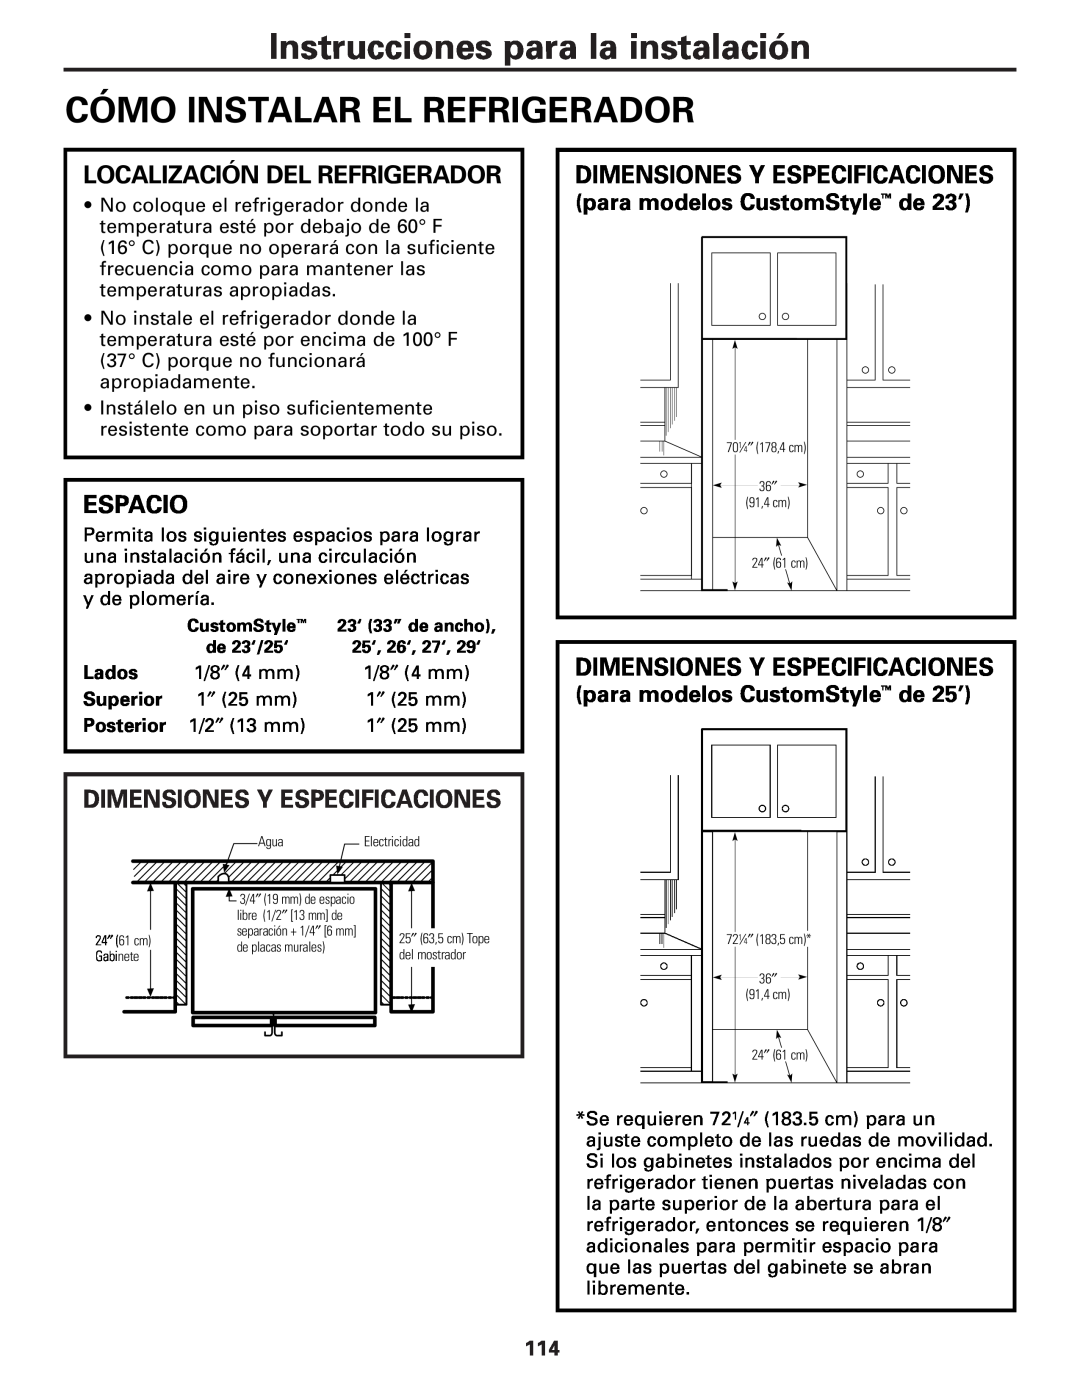 GE 49-60456 Cómo Instalar El Refrigerador, Localización Del Refrigerador, Espacio, Dimensiones Y Especificaciones, Lados 